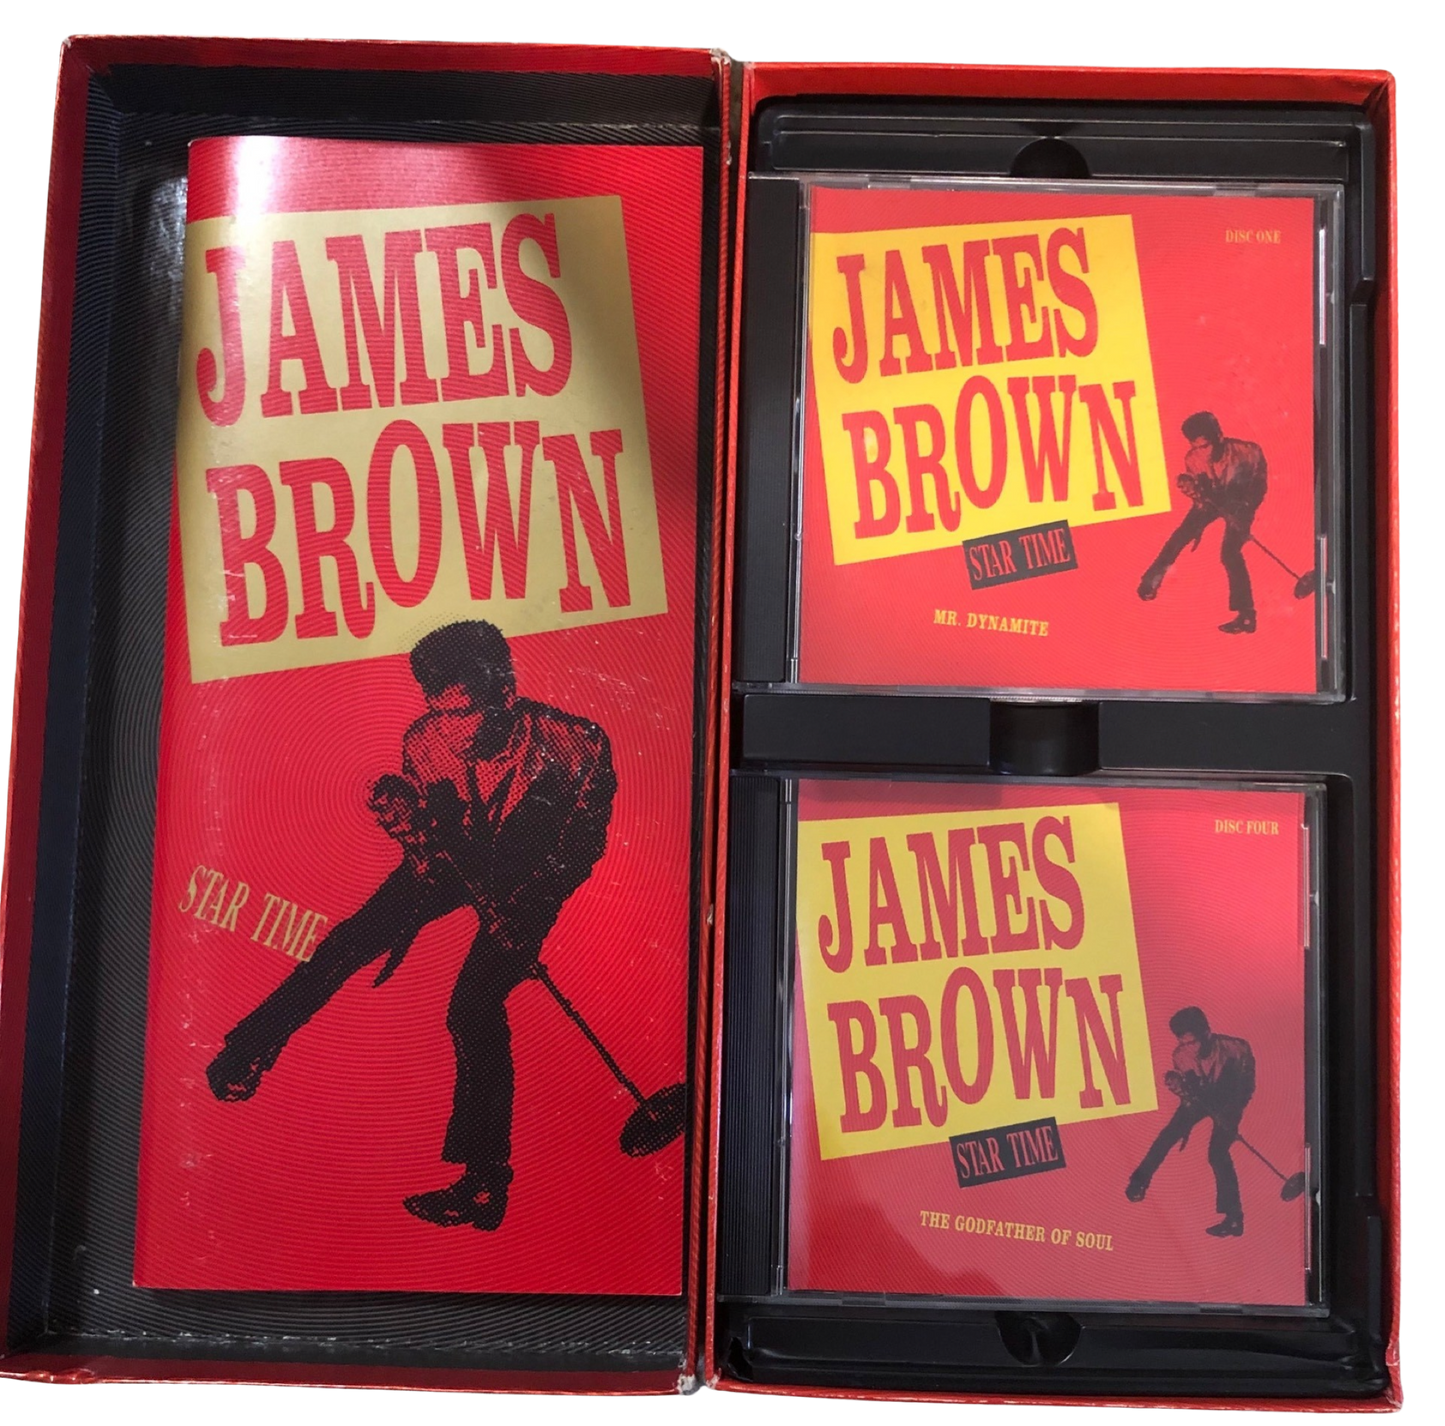 James Brown Star Time